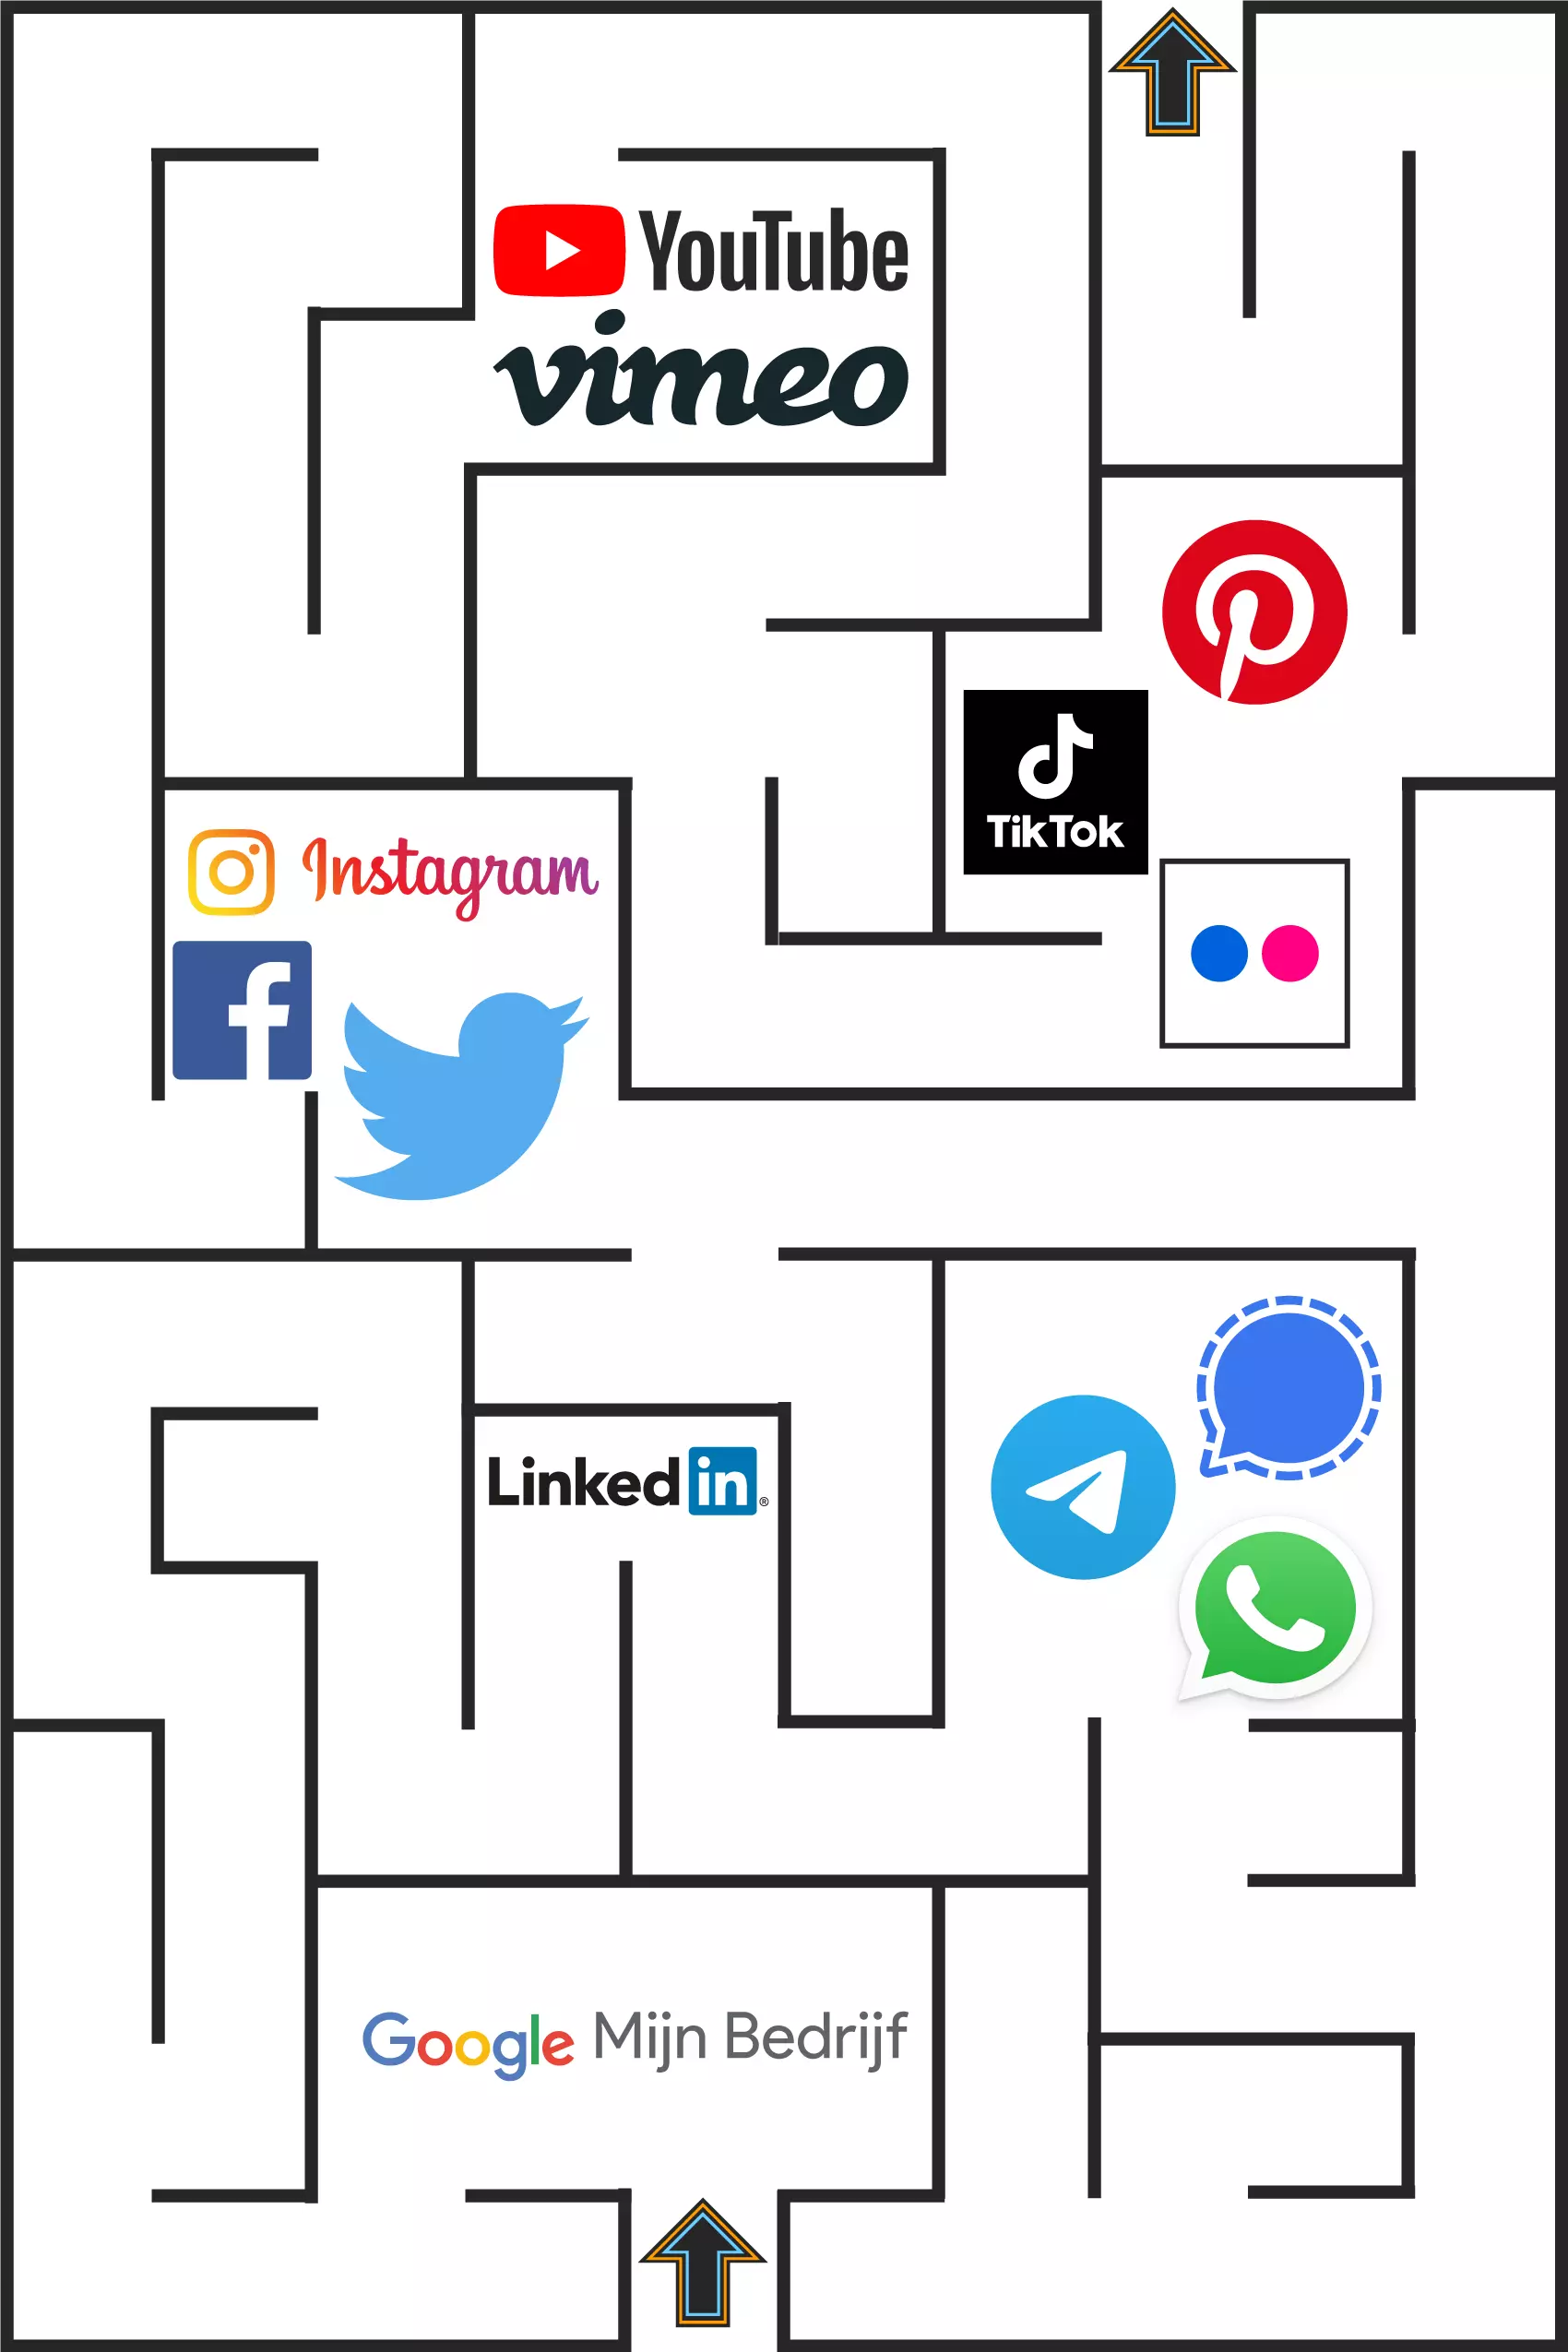 Tekening van een doolhof met logo's van social media platformen. Aan de onderkant van het doolhof staat een pijl om de ingang aan te geven en aan de bovenkant staat eenzelfde pijl om de uitgang aan te geven. De logo's zijn van Google Mijn Bedrijf, LinkedIn, Signal, WhatsApp, Telegram, Facebook, Instagram, Twitter, YouTube, Vimeo, Pinterest, TikTok en Flickr.